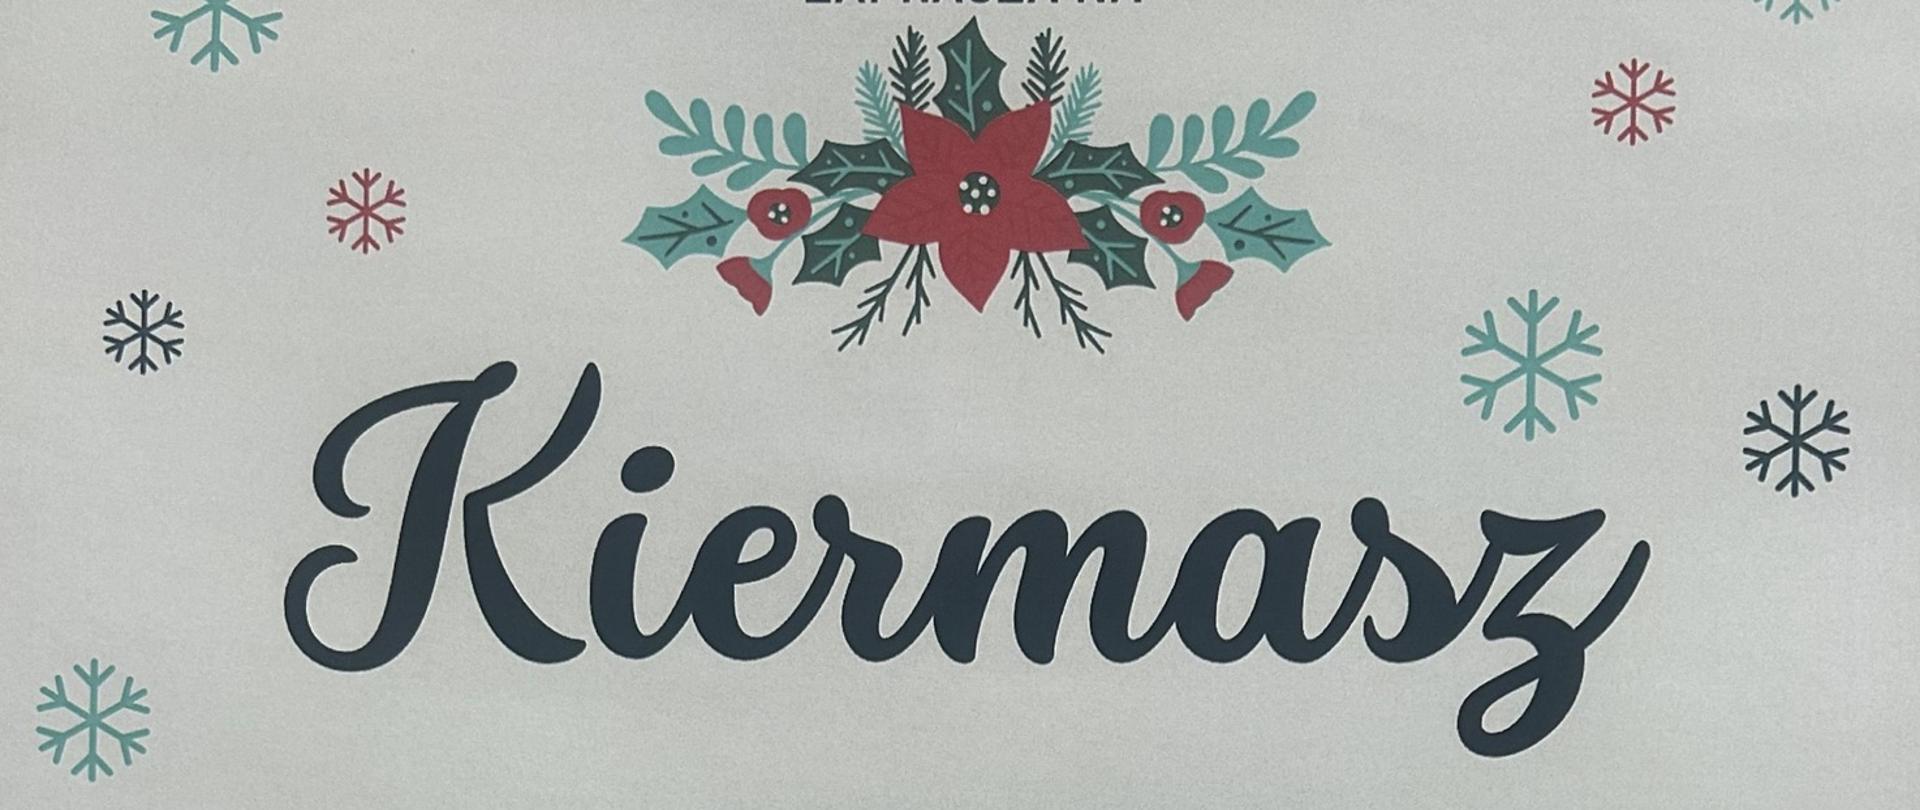 granatowy napis KIermasz otoczony śnieżynkami w różnych kolorach na białym tle, zwieńczony gwiazdą betlejemską